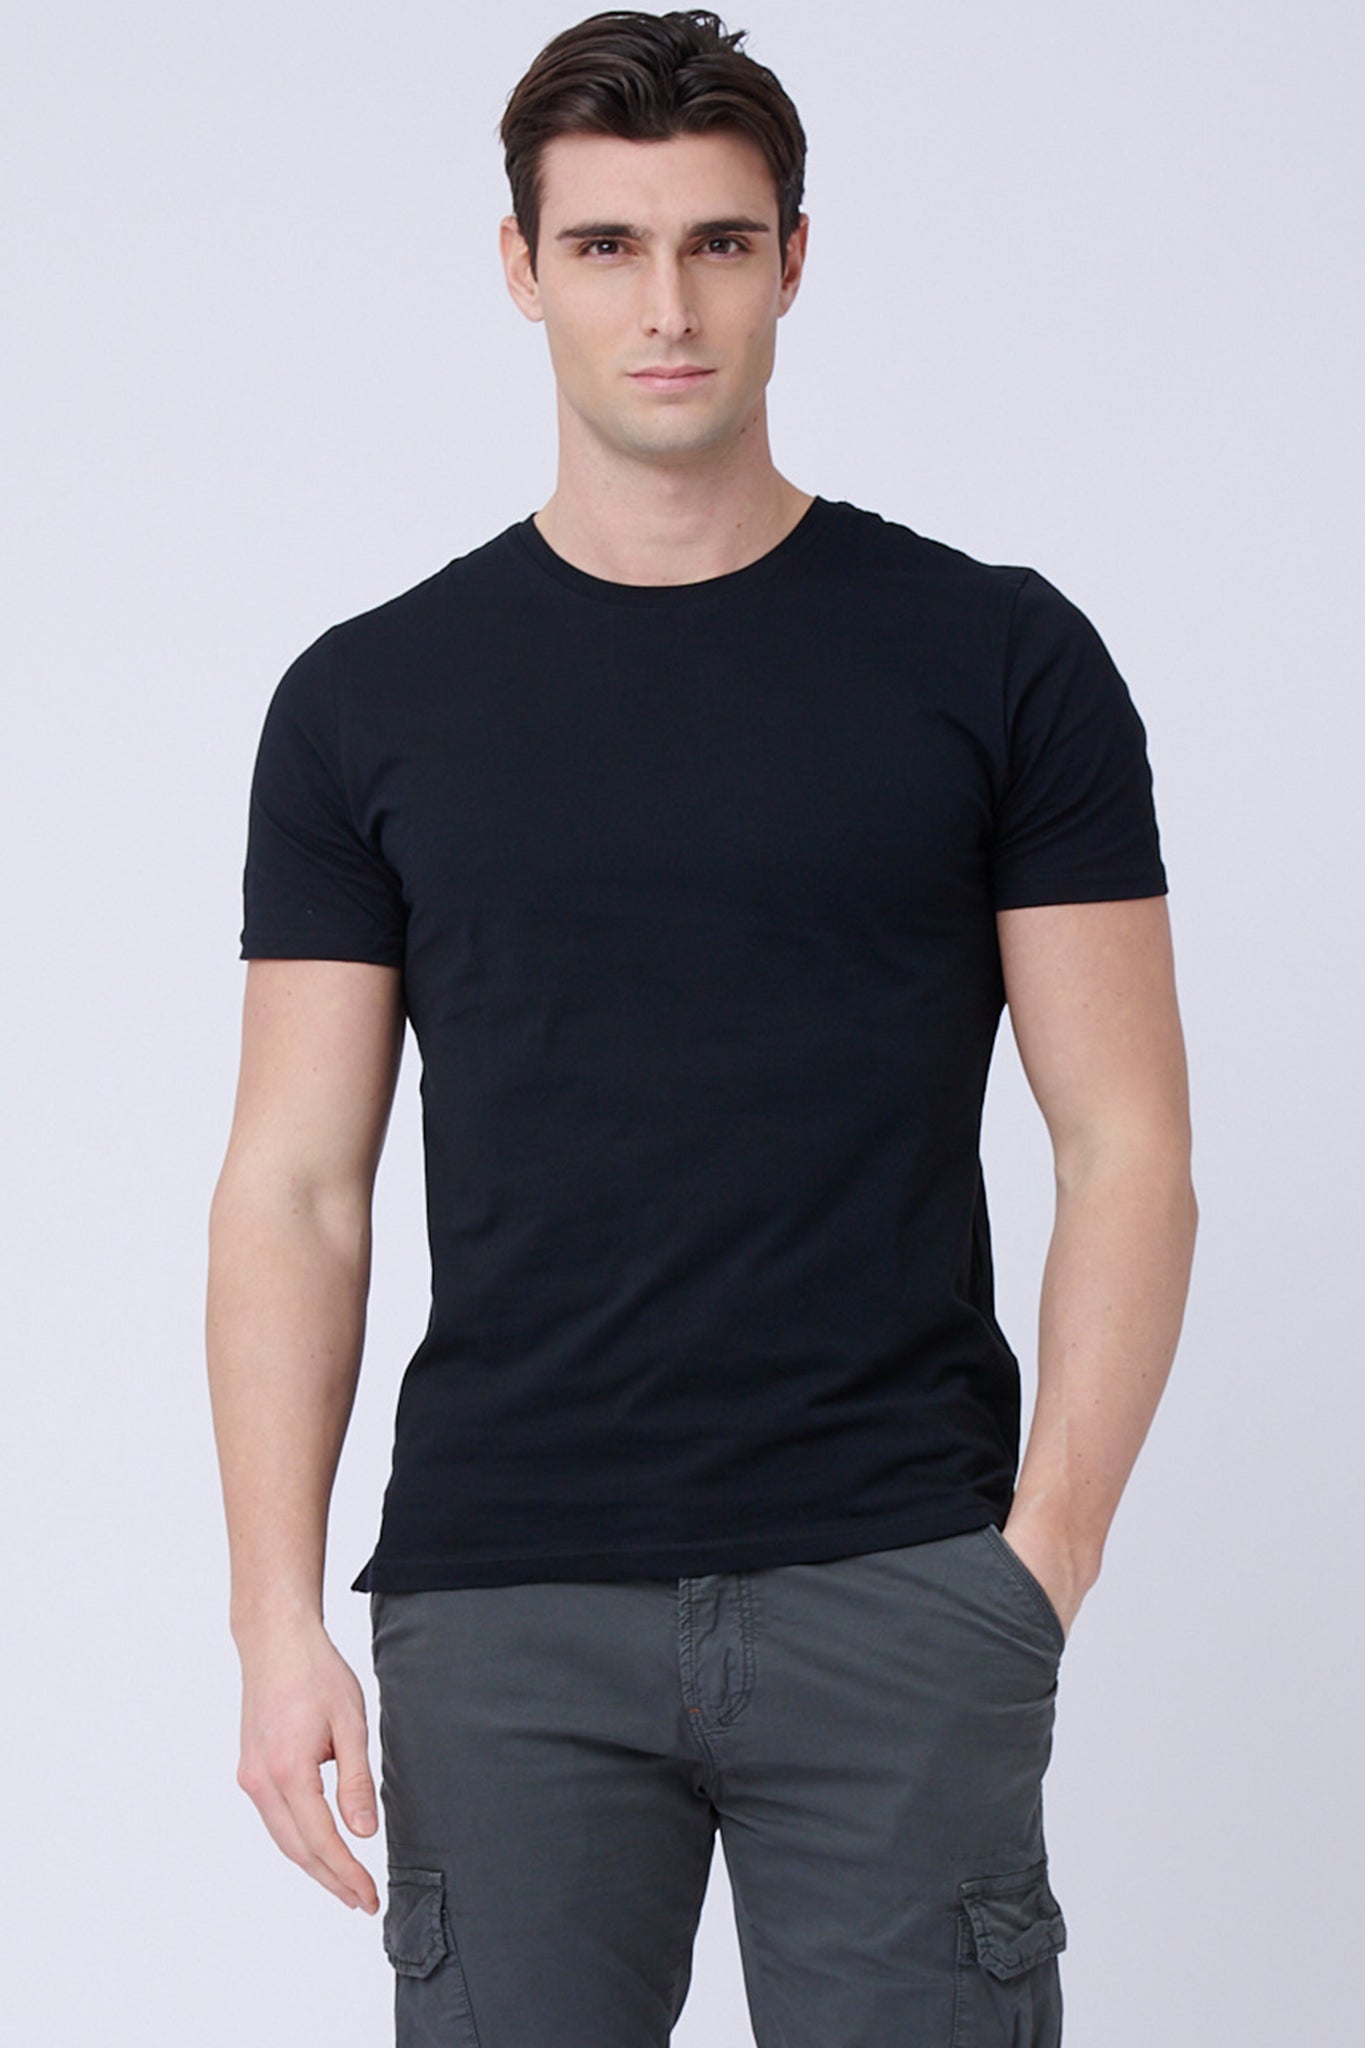 Camiseta negra – Max Martini Milano